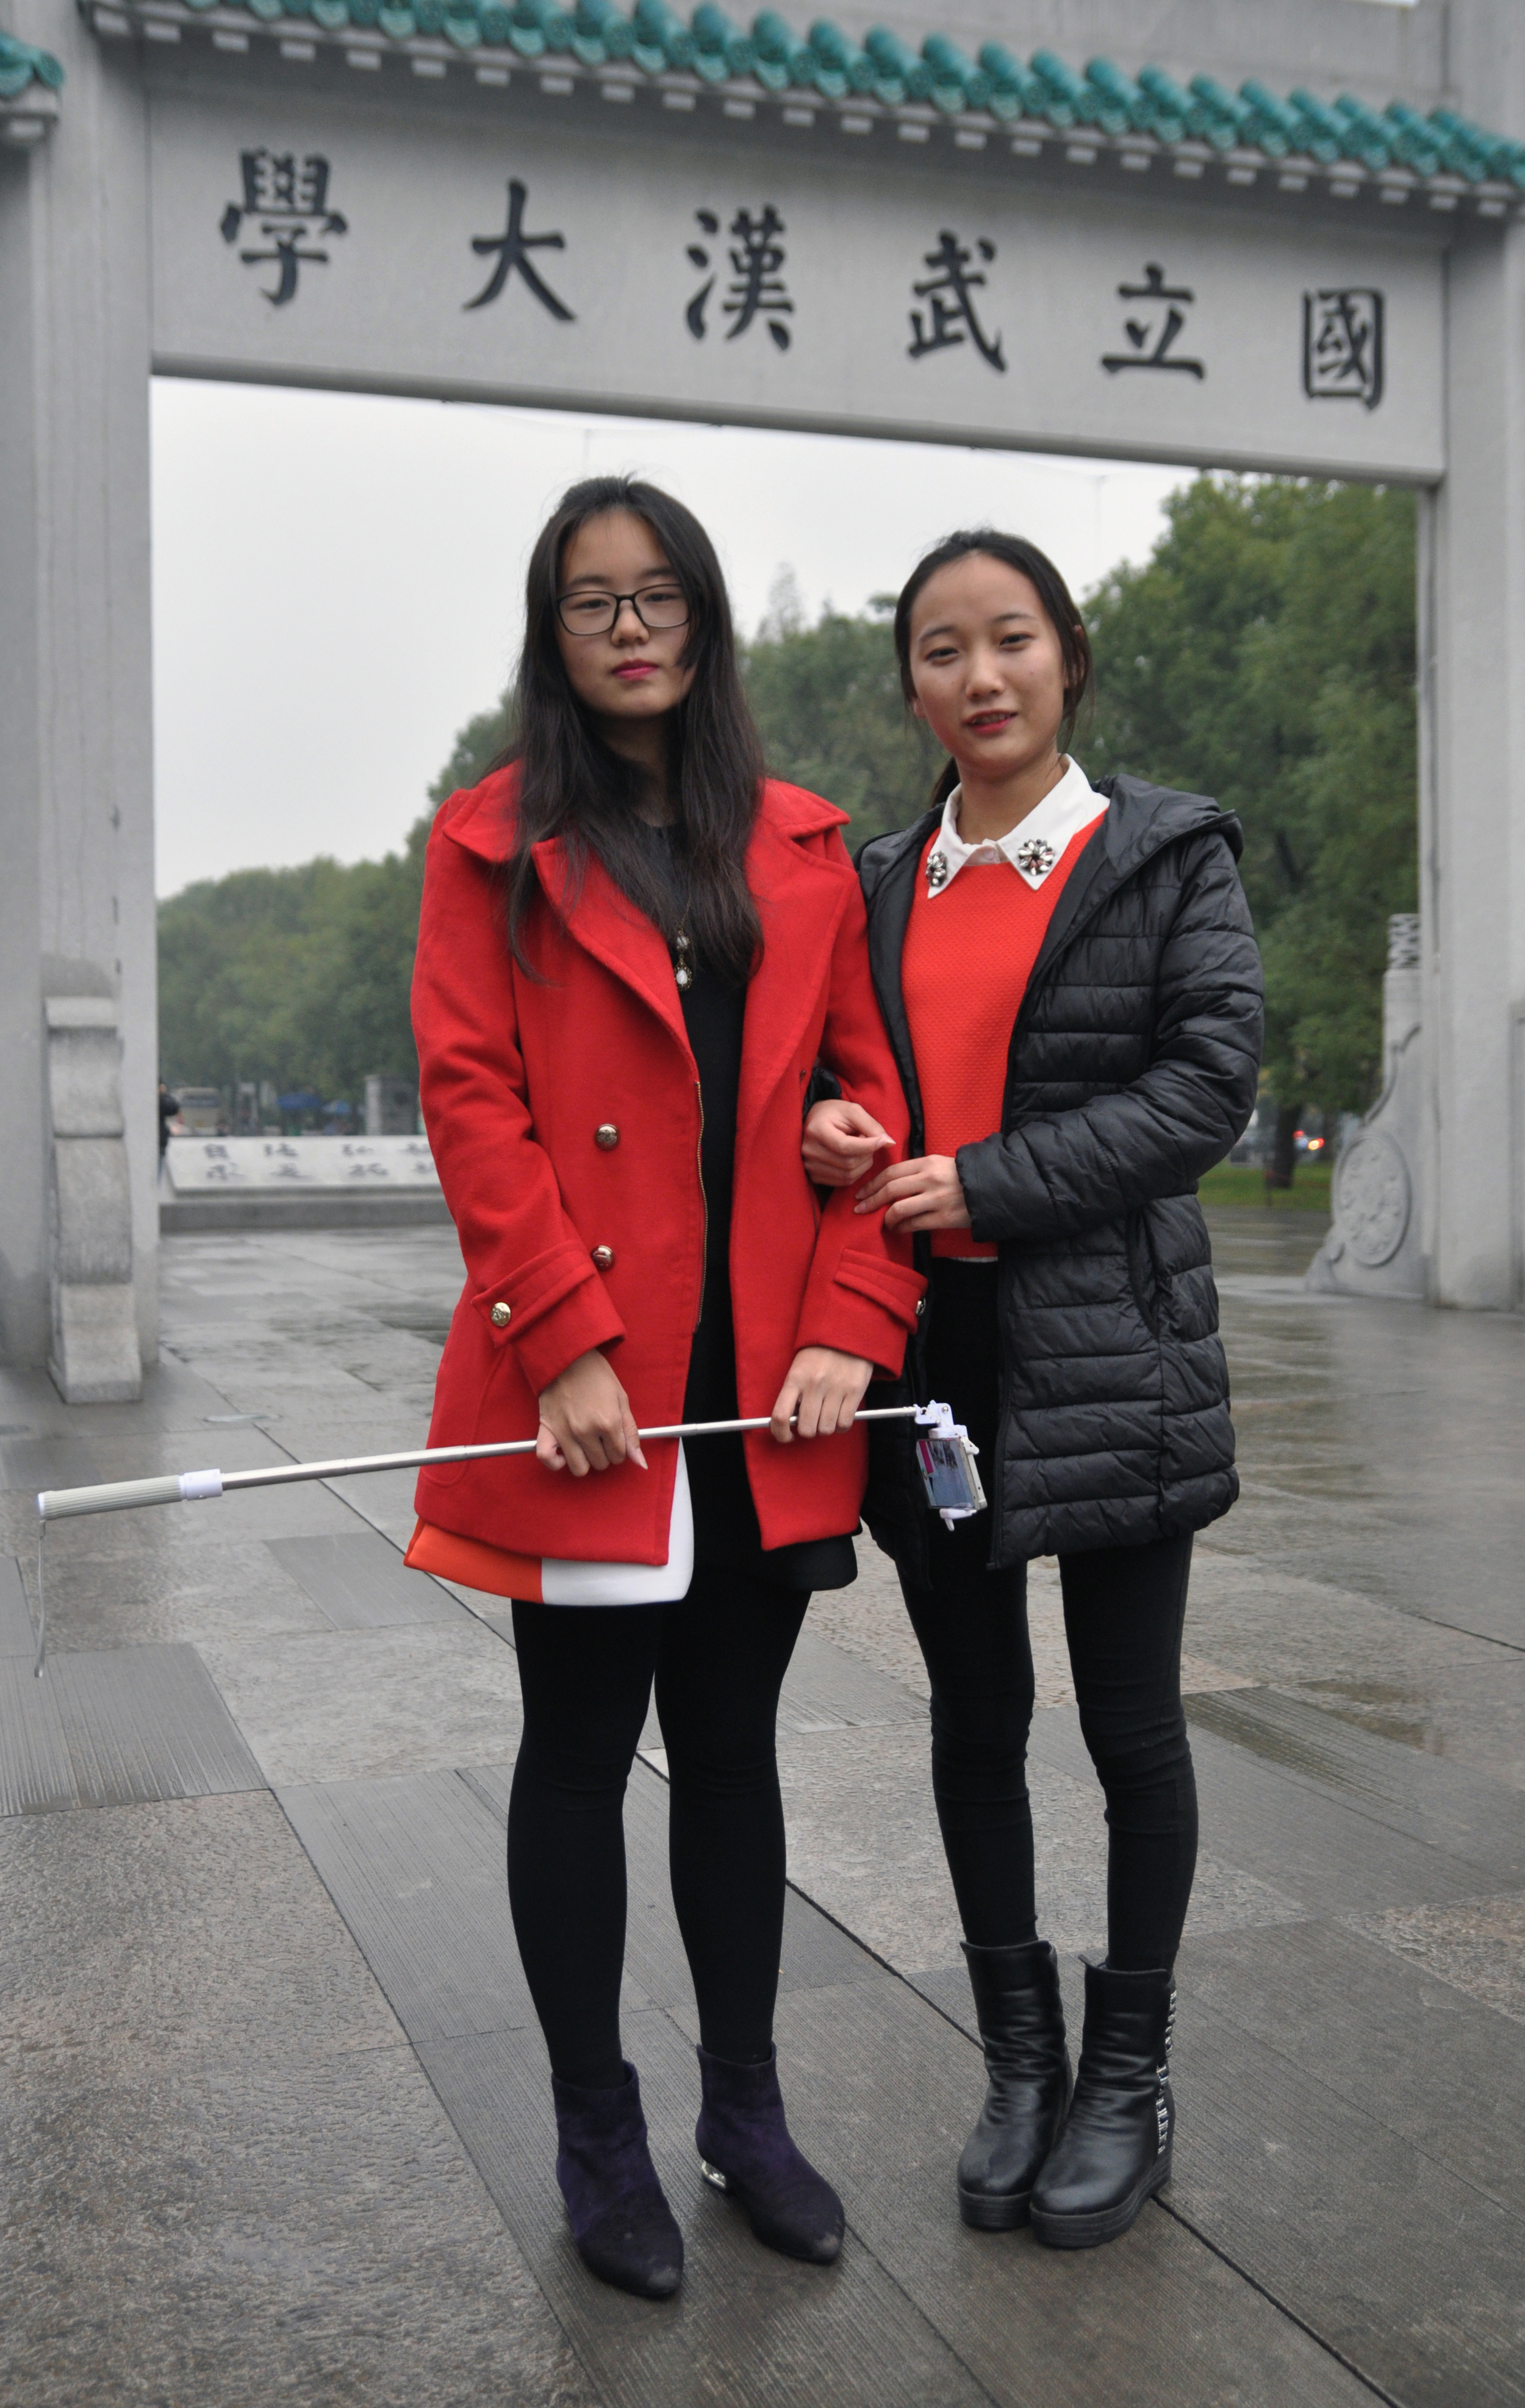  Wuhan University students, 2015 